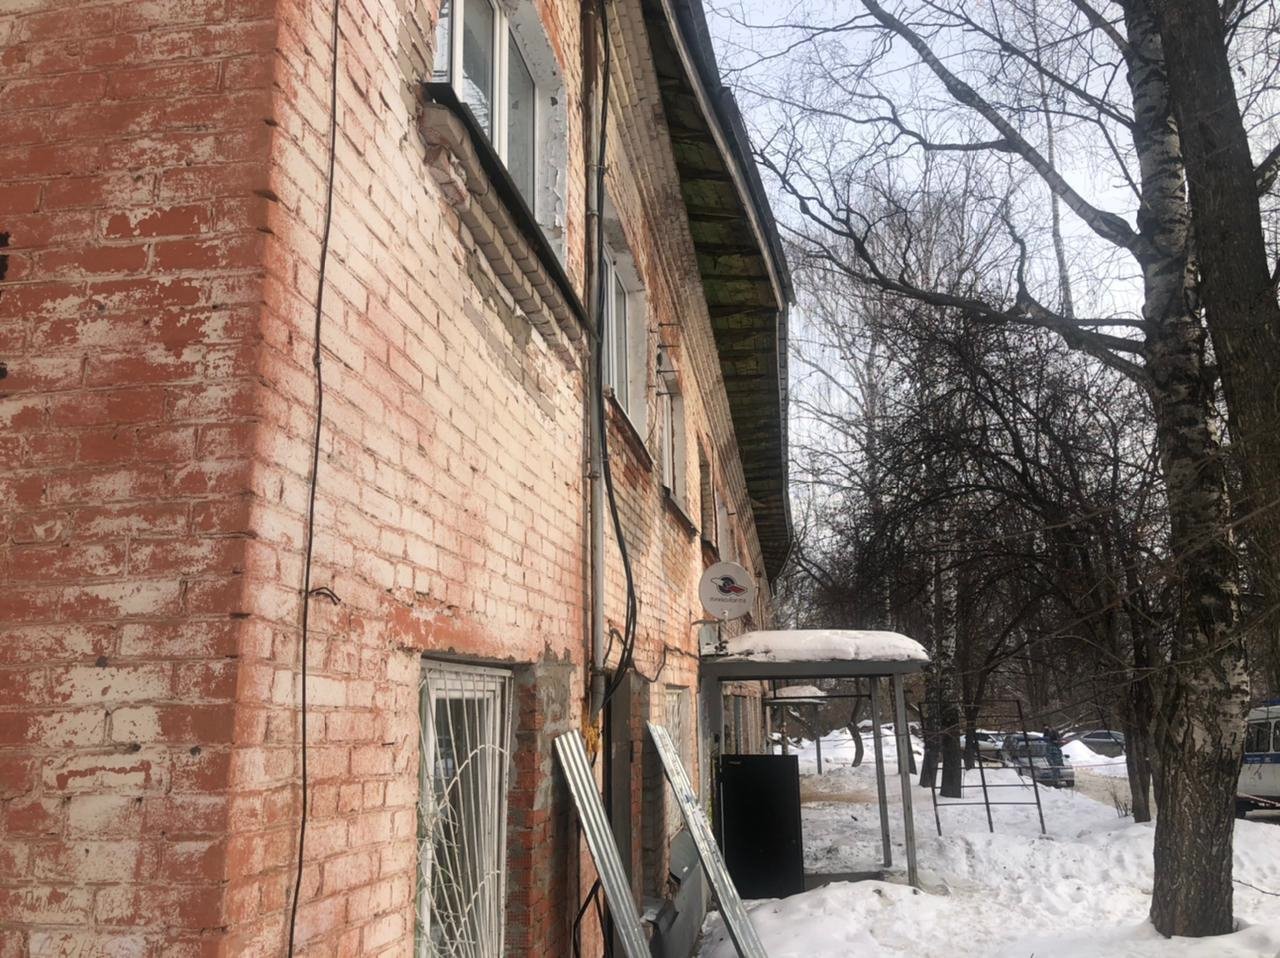 

5 семей, эвакуированных из дома в поселке Машиностроителей в Ижевске, решили остановиться в санатории

